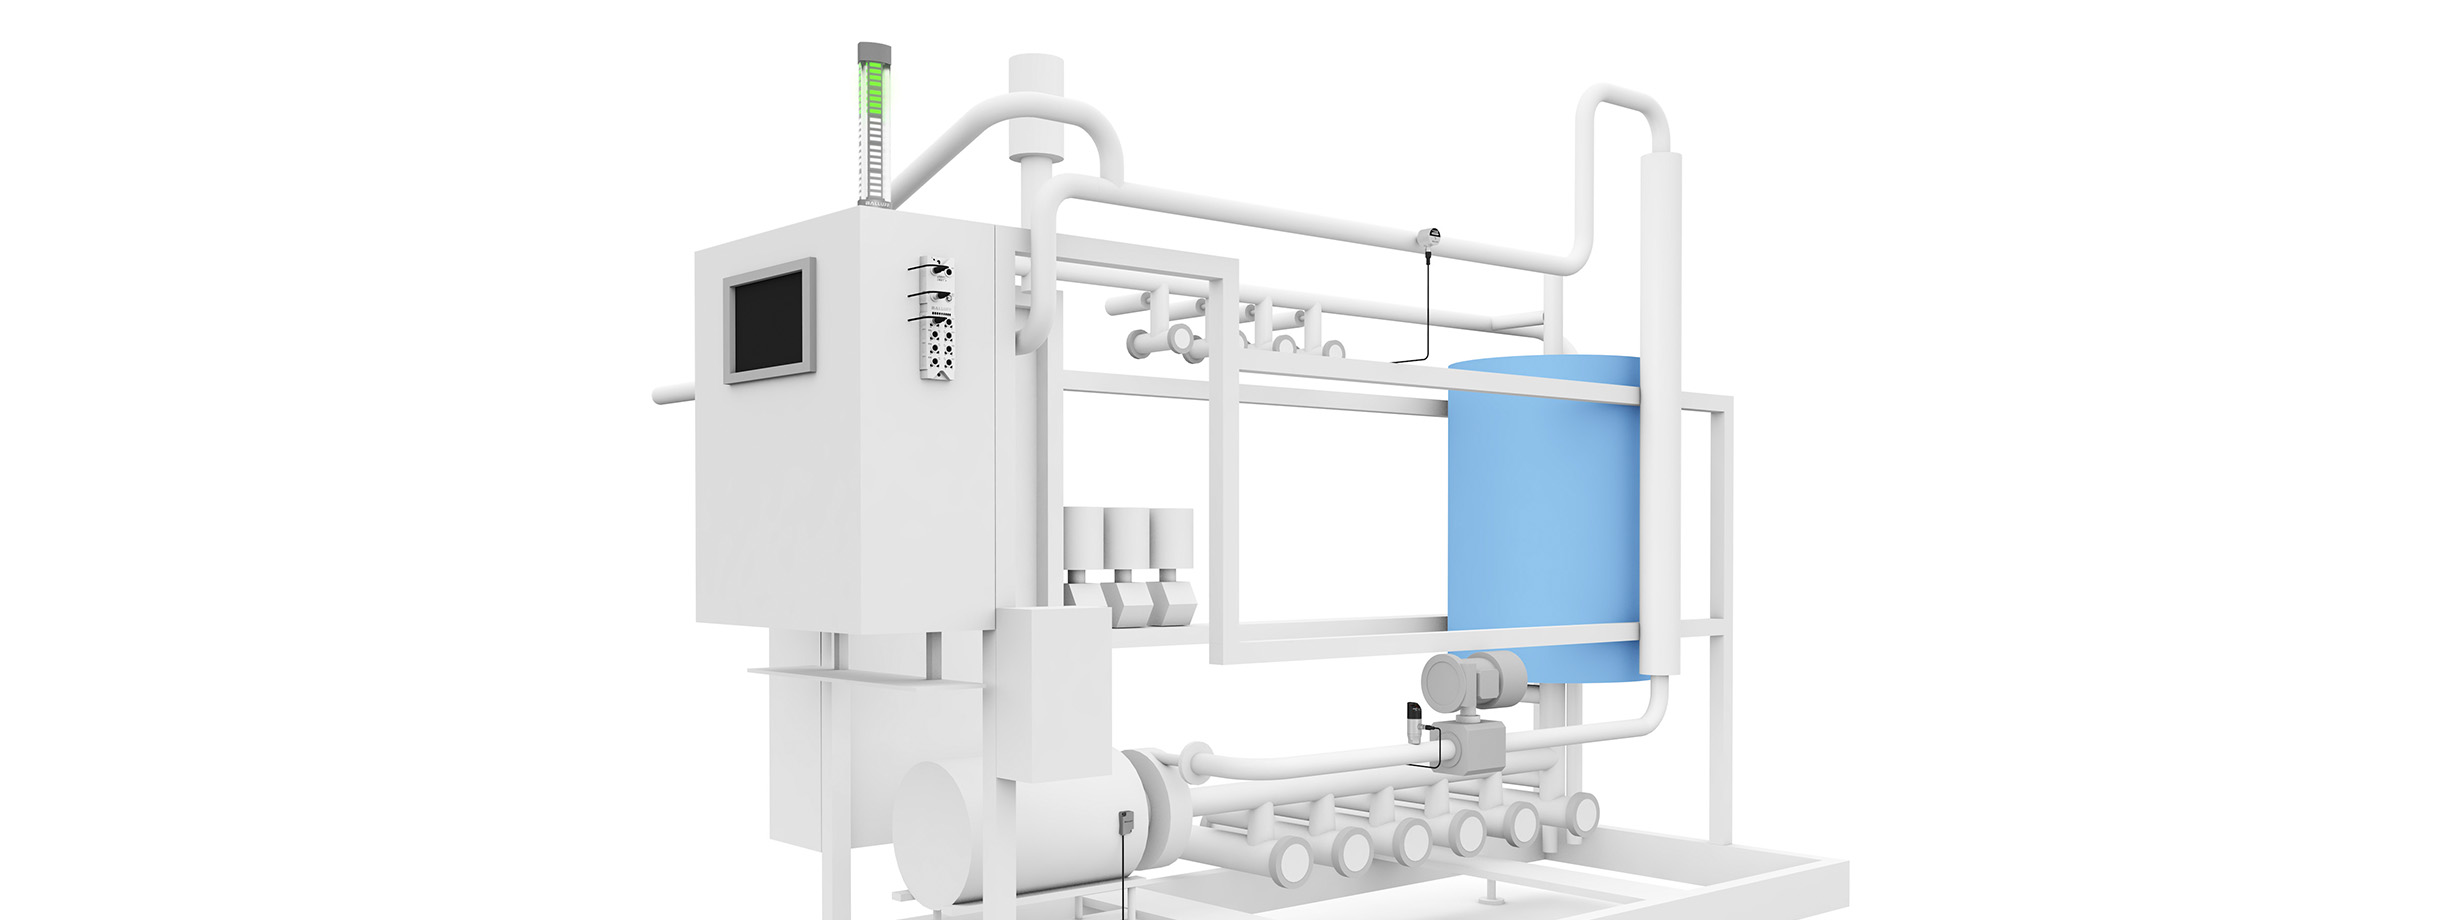 Intelligente Sensorintegration zur automatischen Reinigung in der Getränkeproduktion image